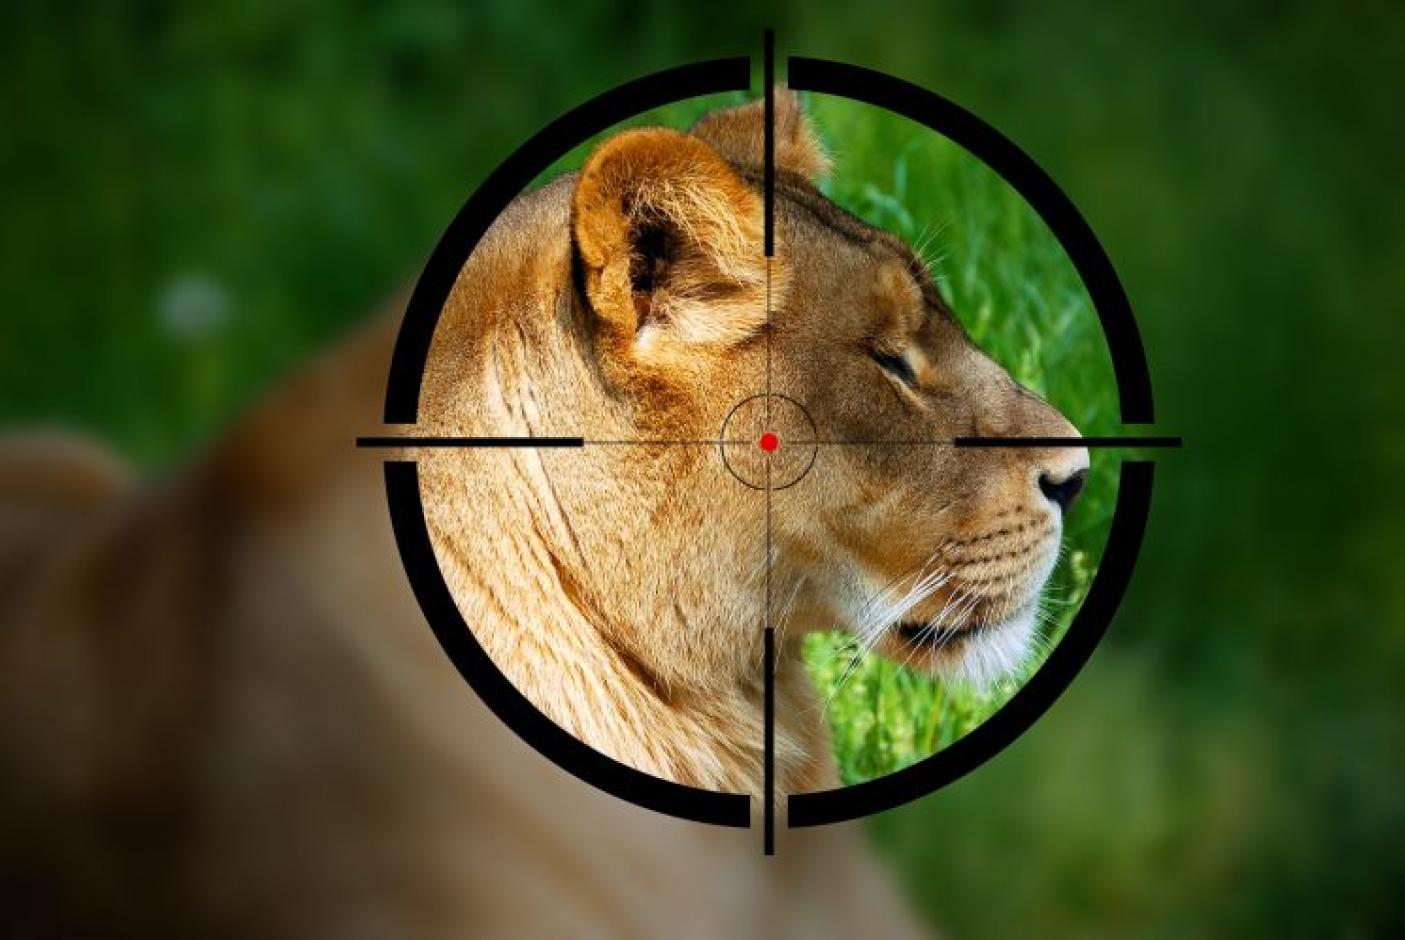 Shooting Wildlife II | Ethical Consumer